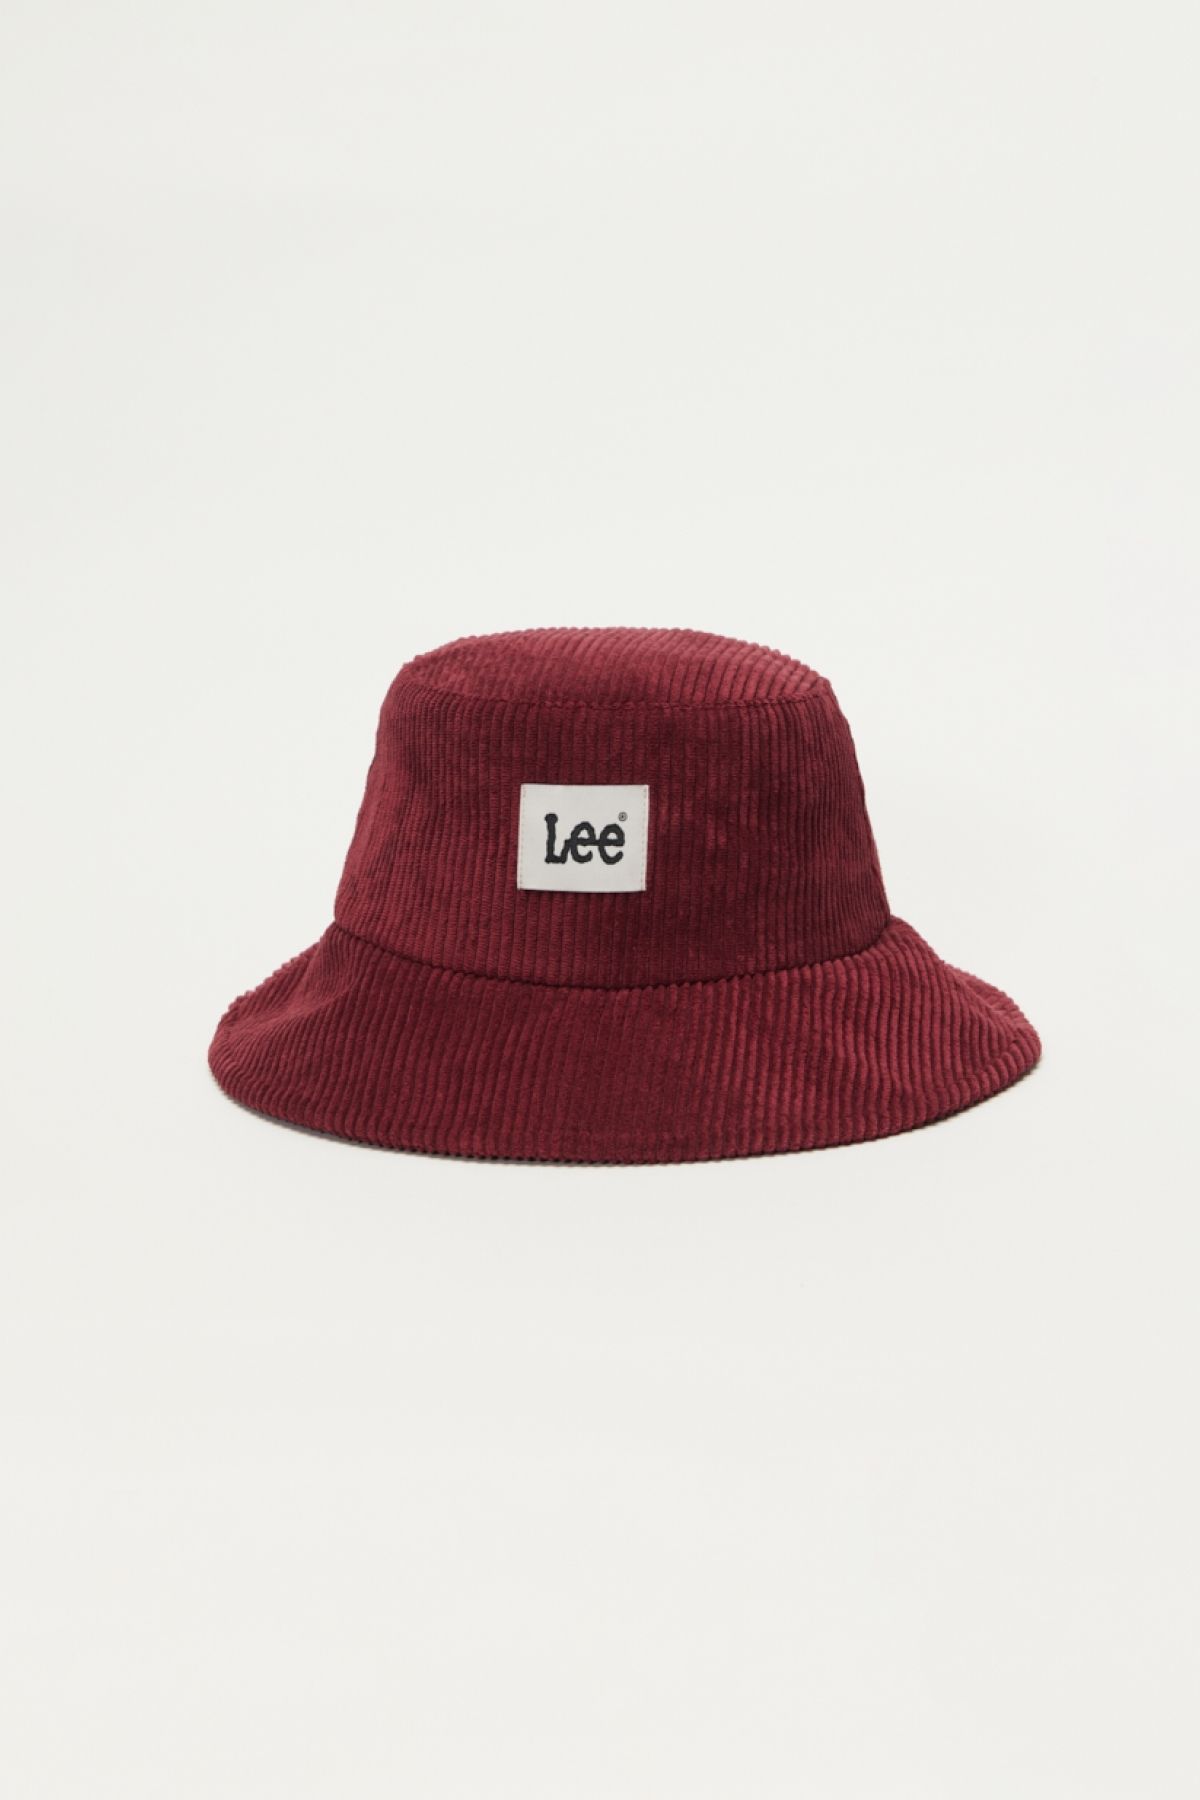 Lee Bordo Kadın Şapka